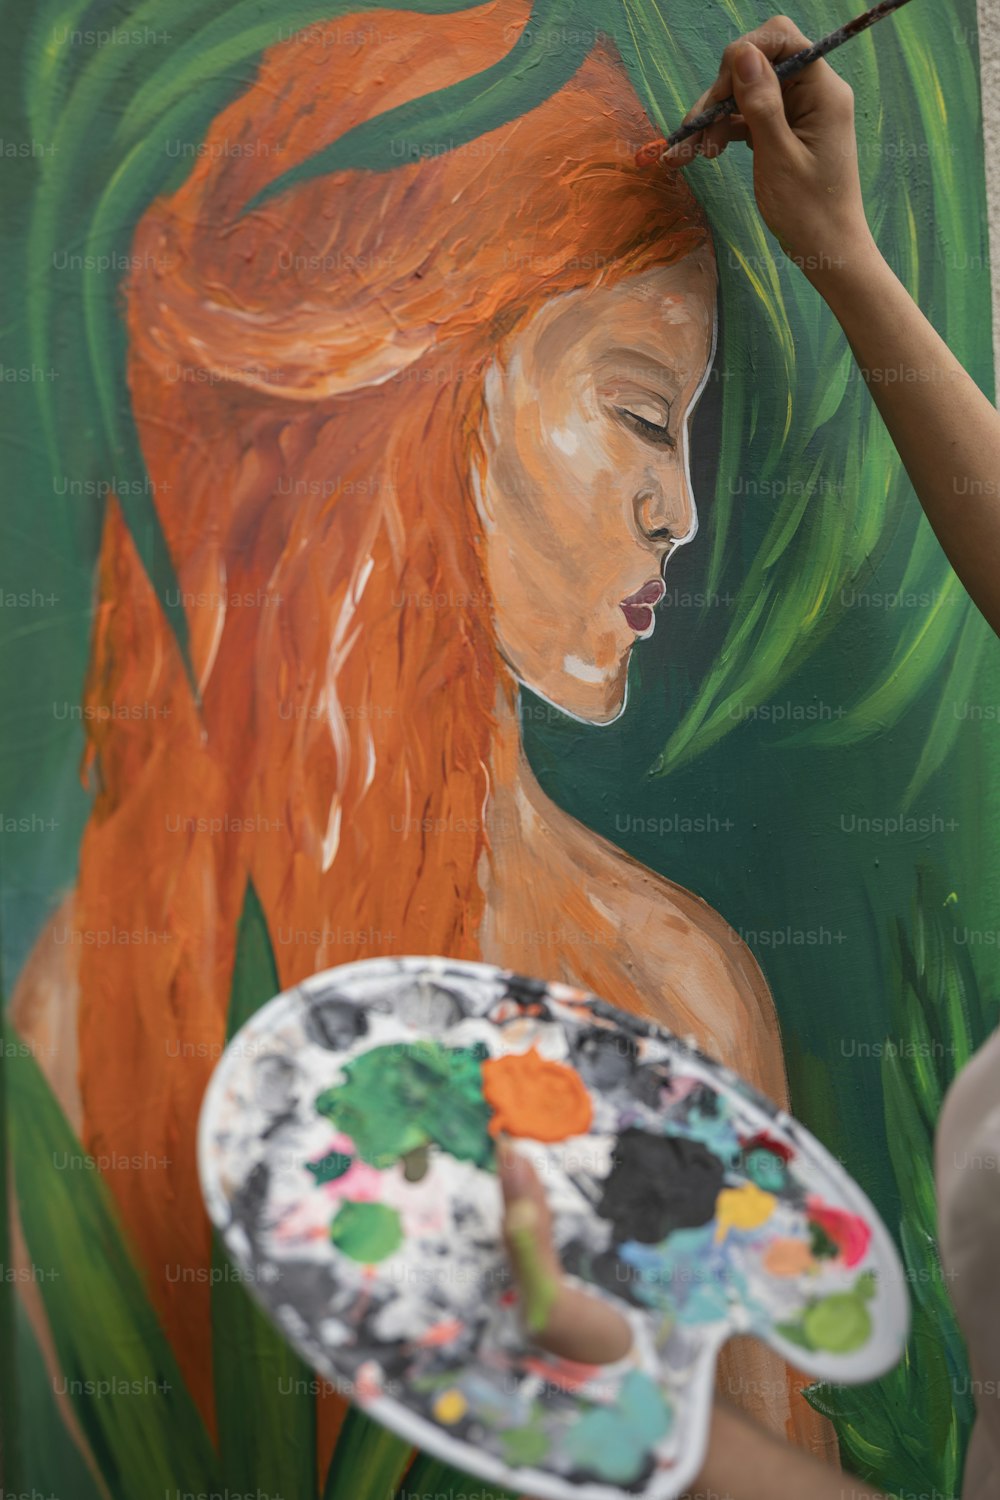 Eine Frau malt ein Bild an eine Wand